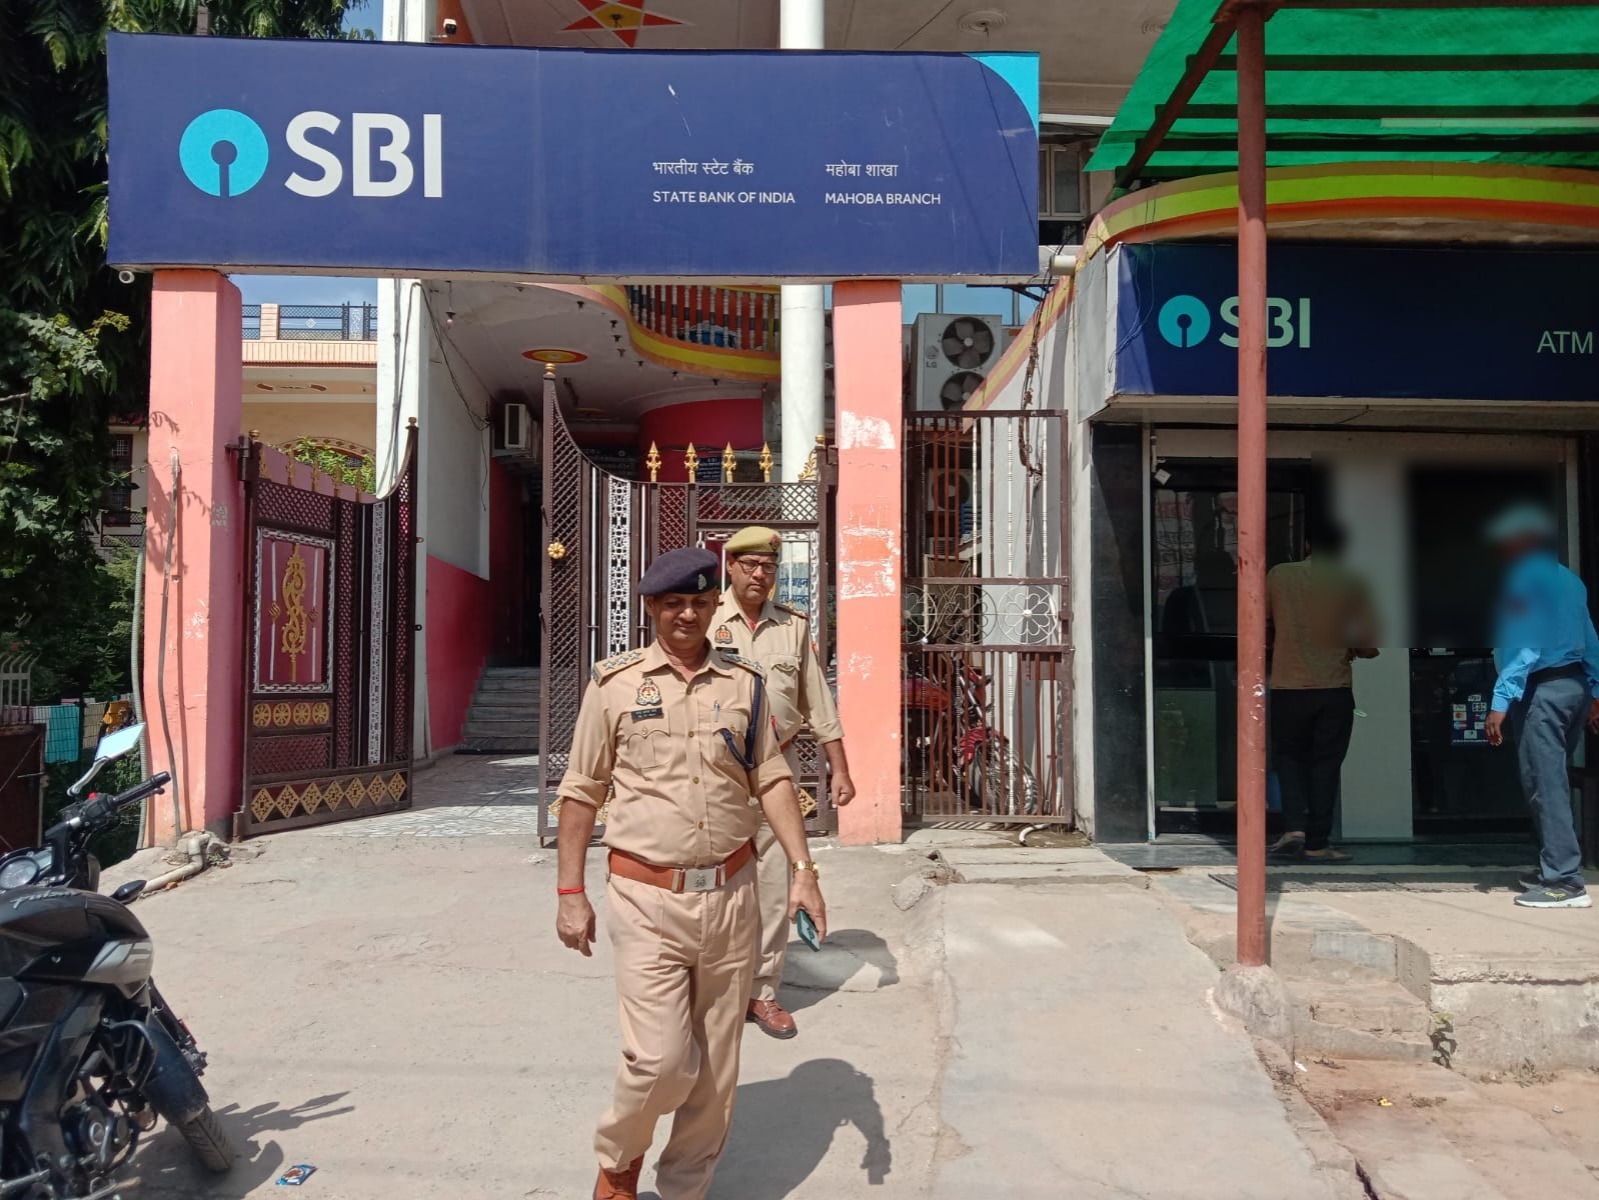 जनपदीय पुलिस द्वारा बैंकों की सुरक्षा व्यवस्था का लिया गया जायजा, दिये गये आवश्यक दिशा-निर्देश